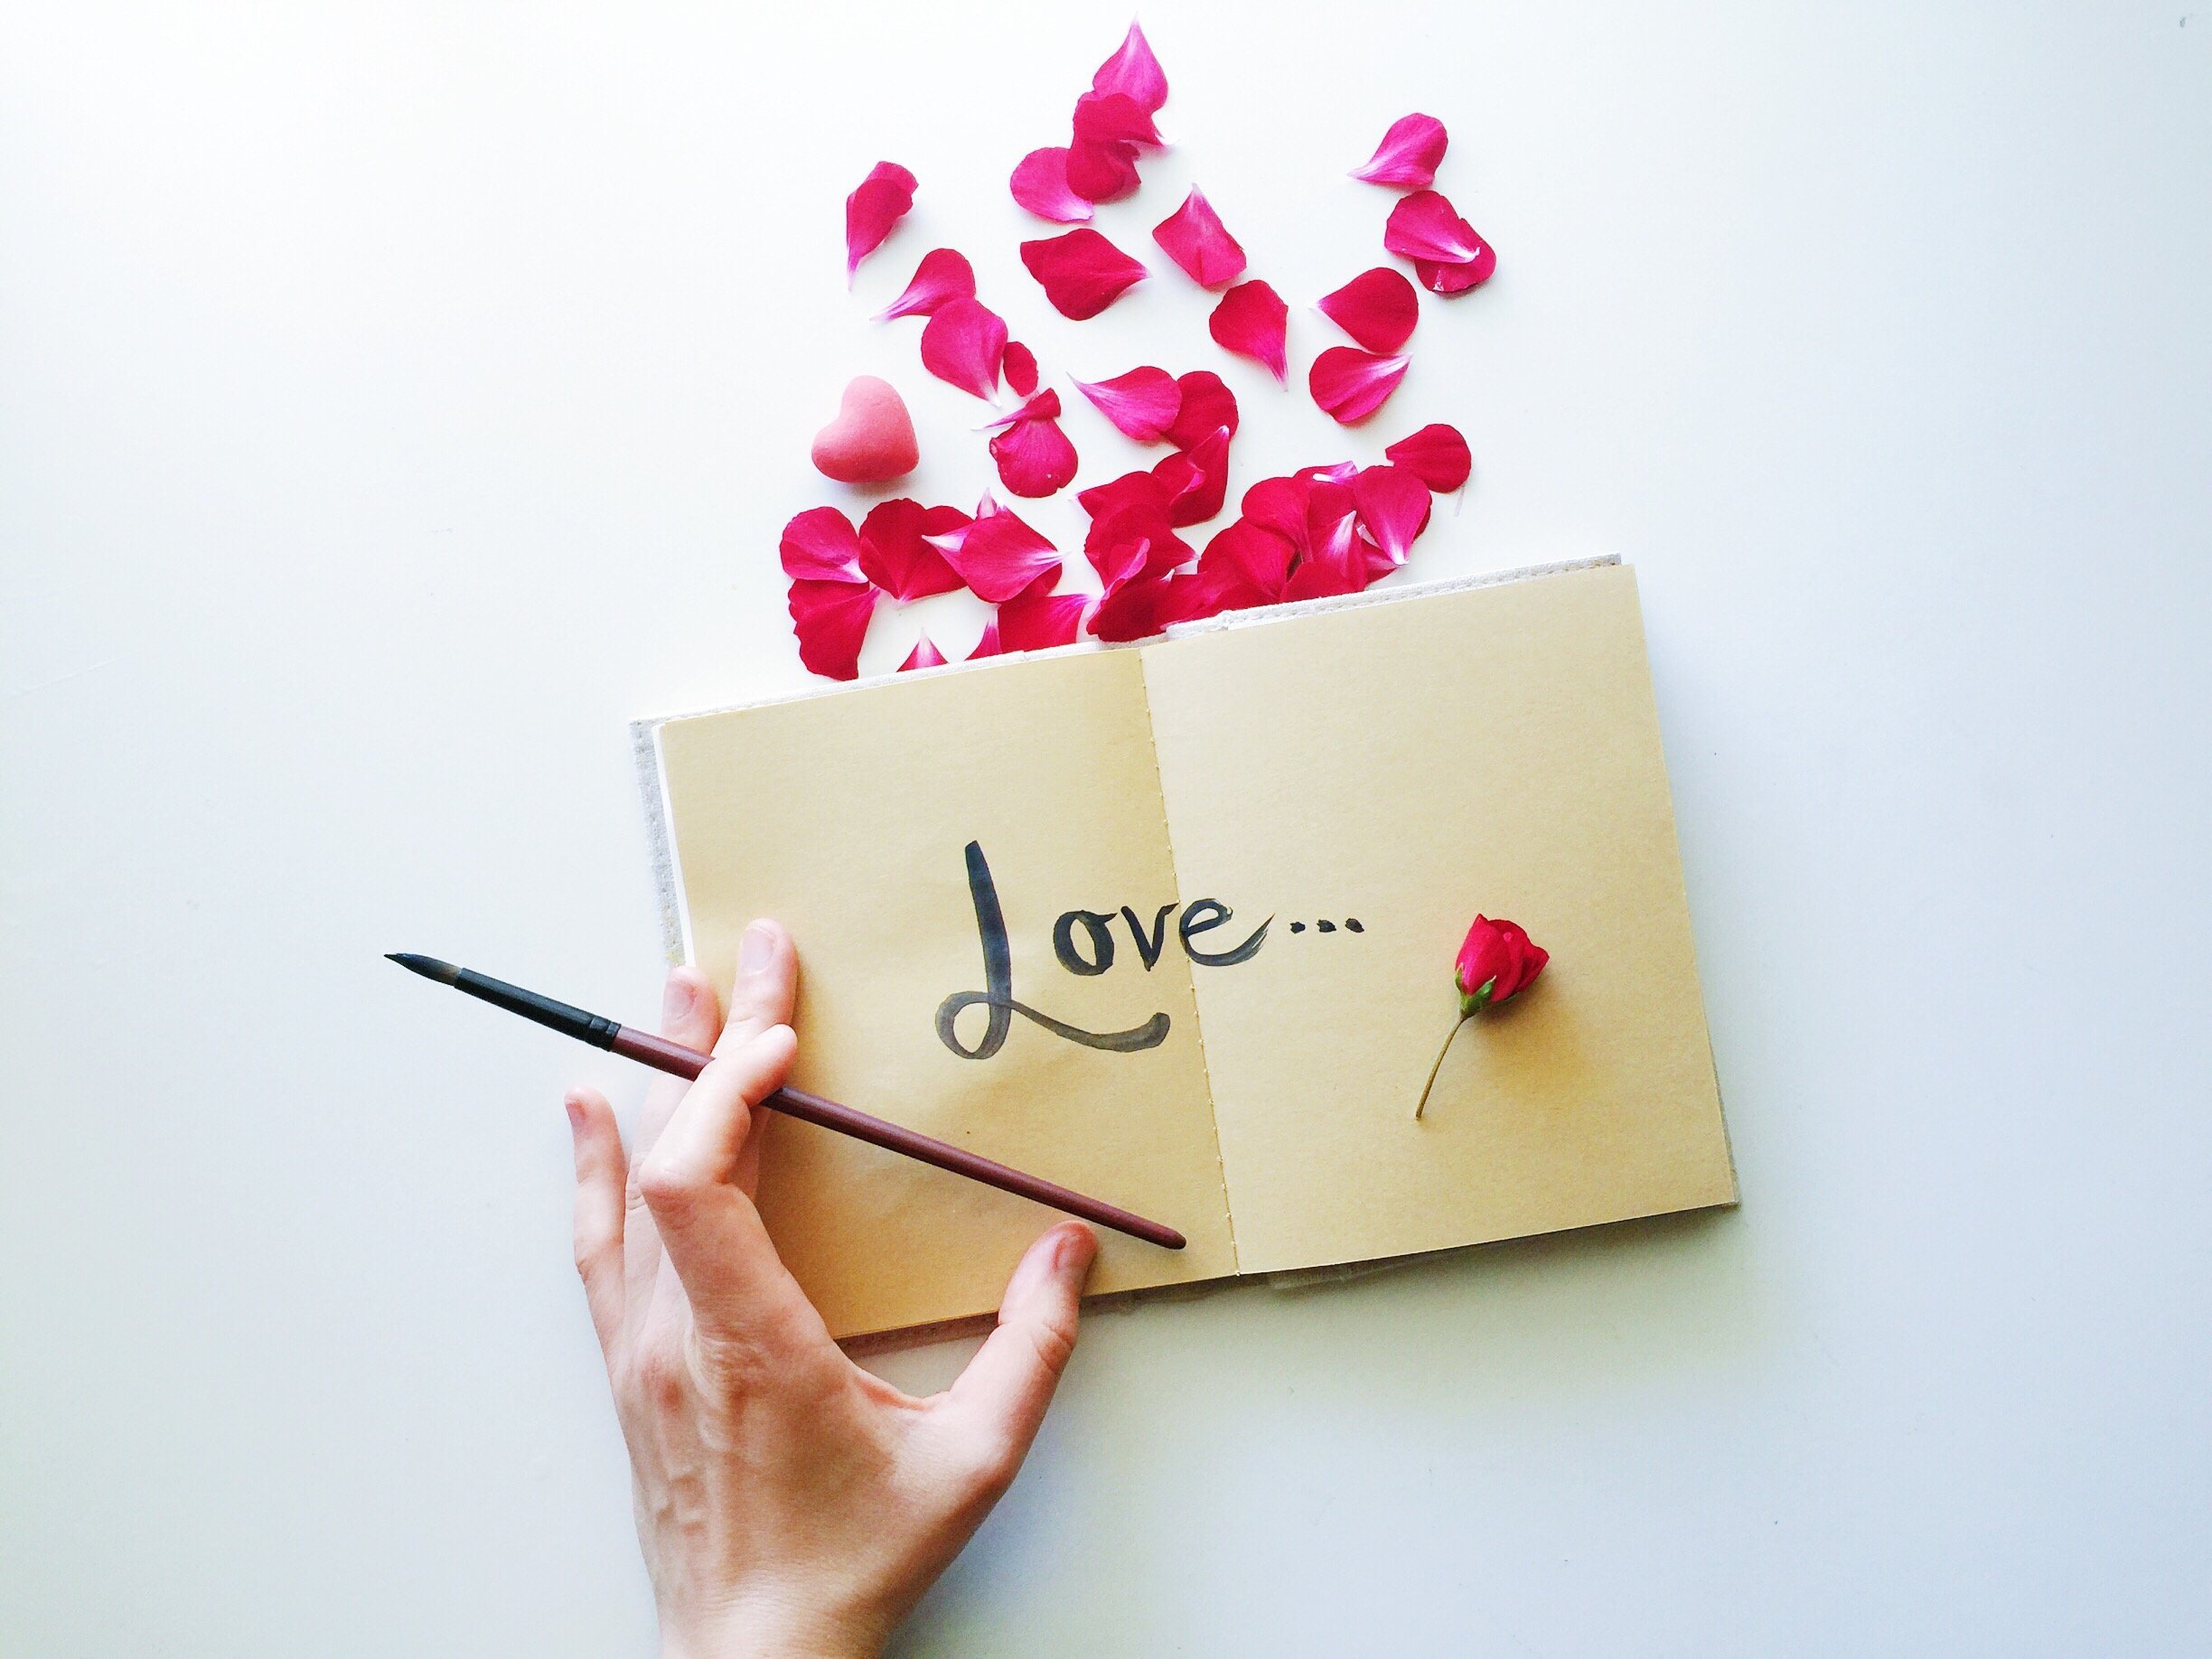 Caderno escrito 'amor' em inglês com algumas pétalas de flor na parte da frente do caderno